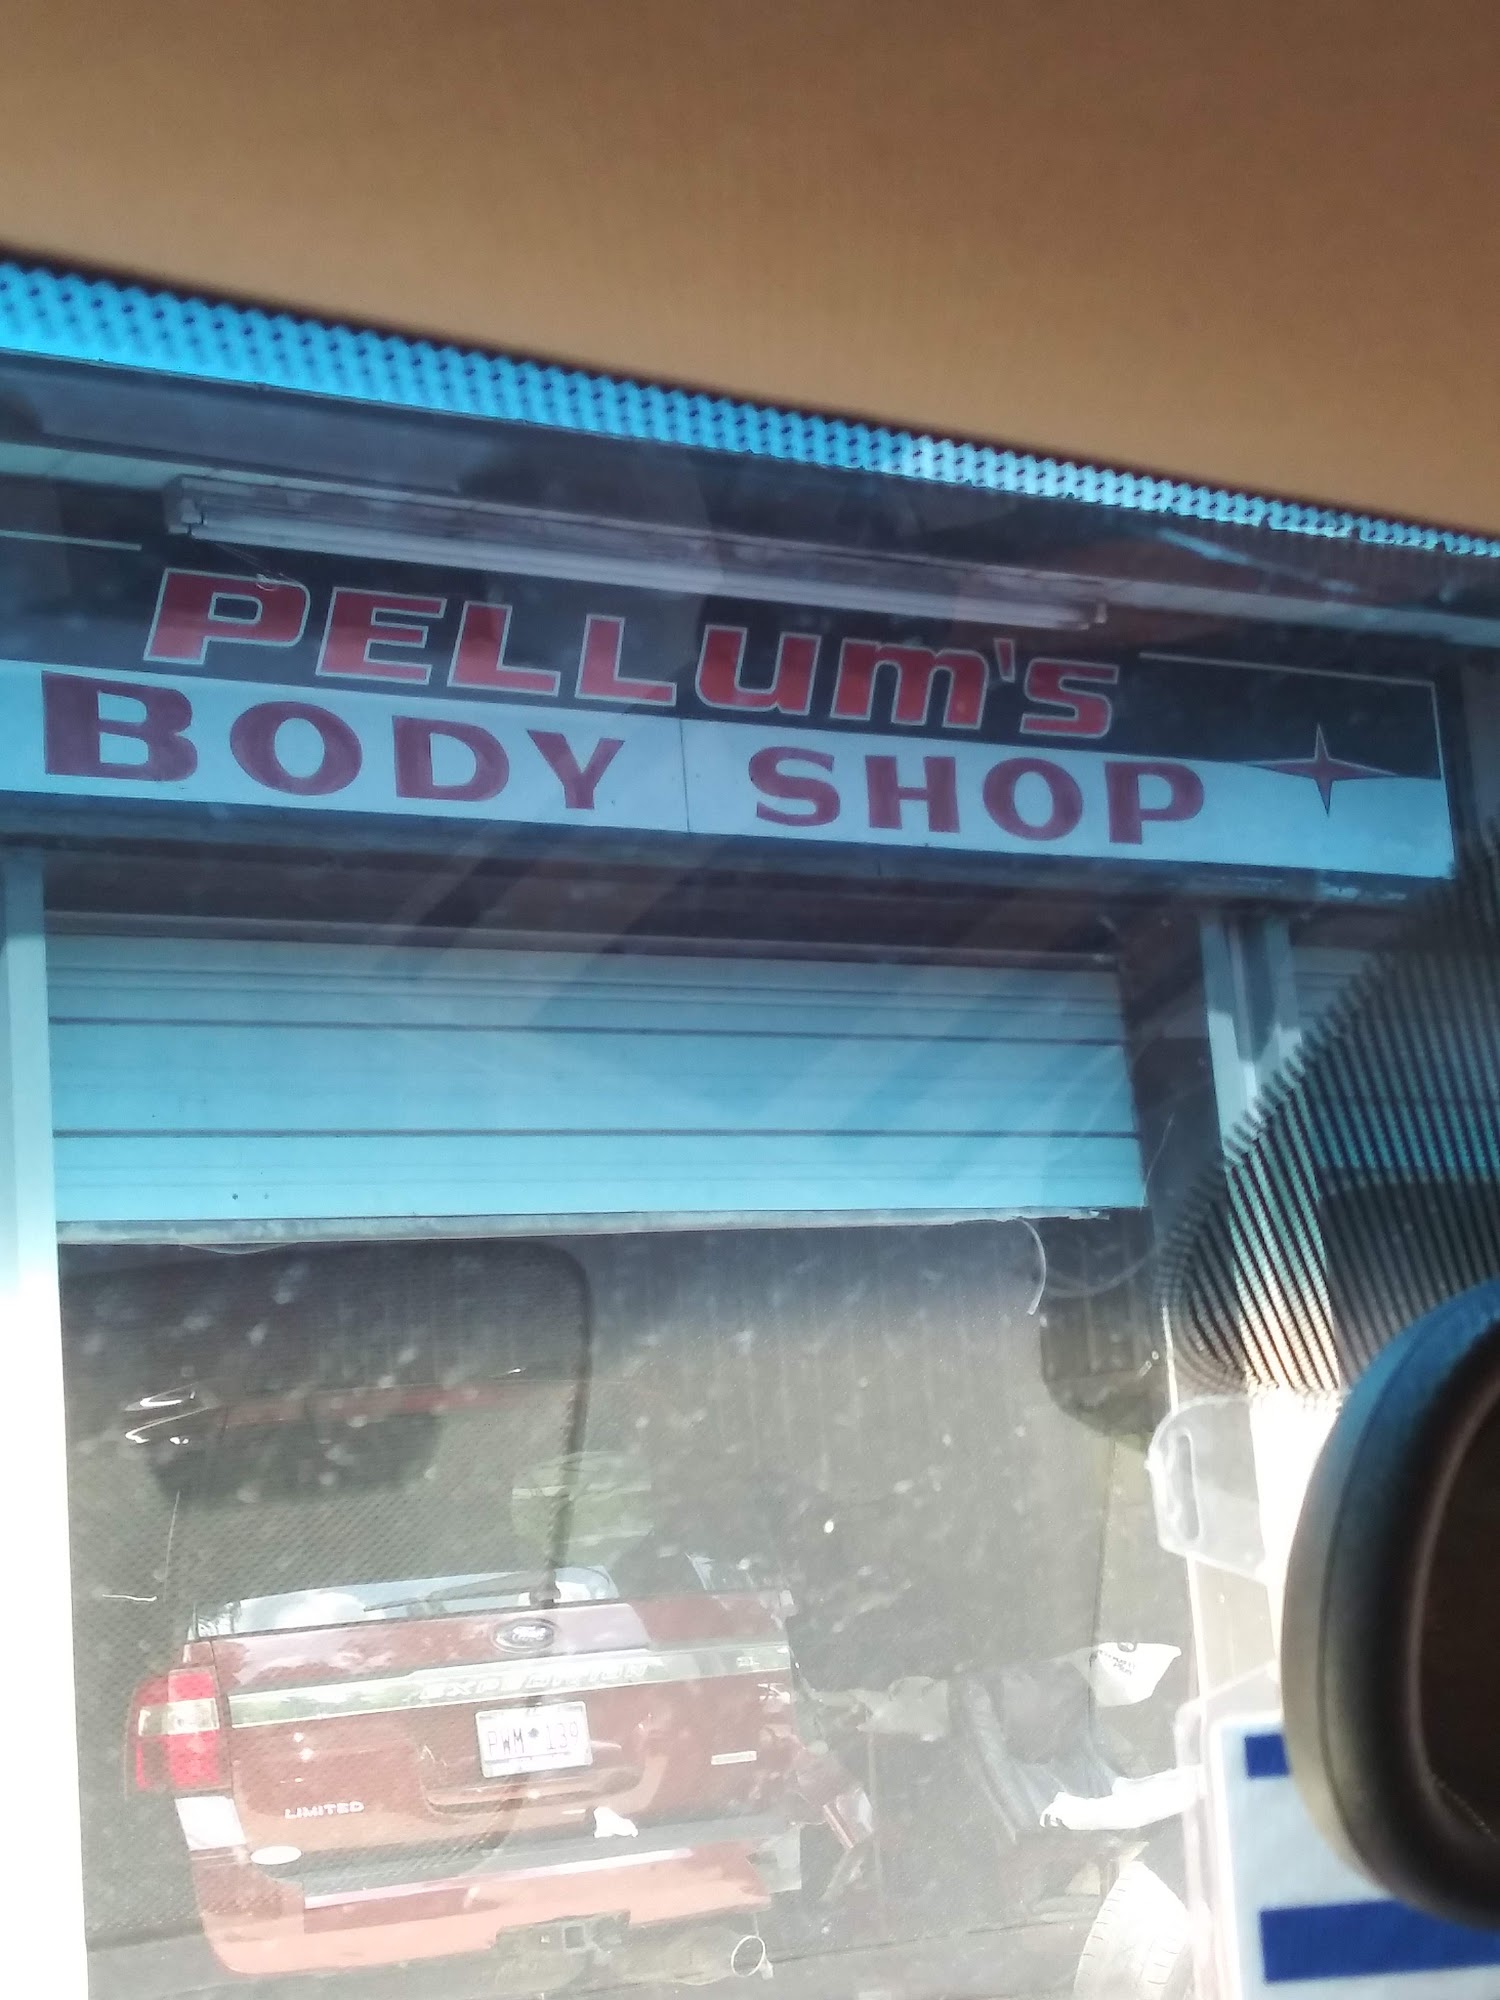 Pellum's Body Shop